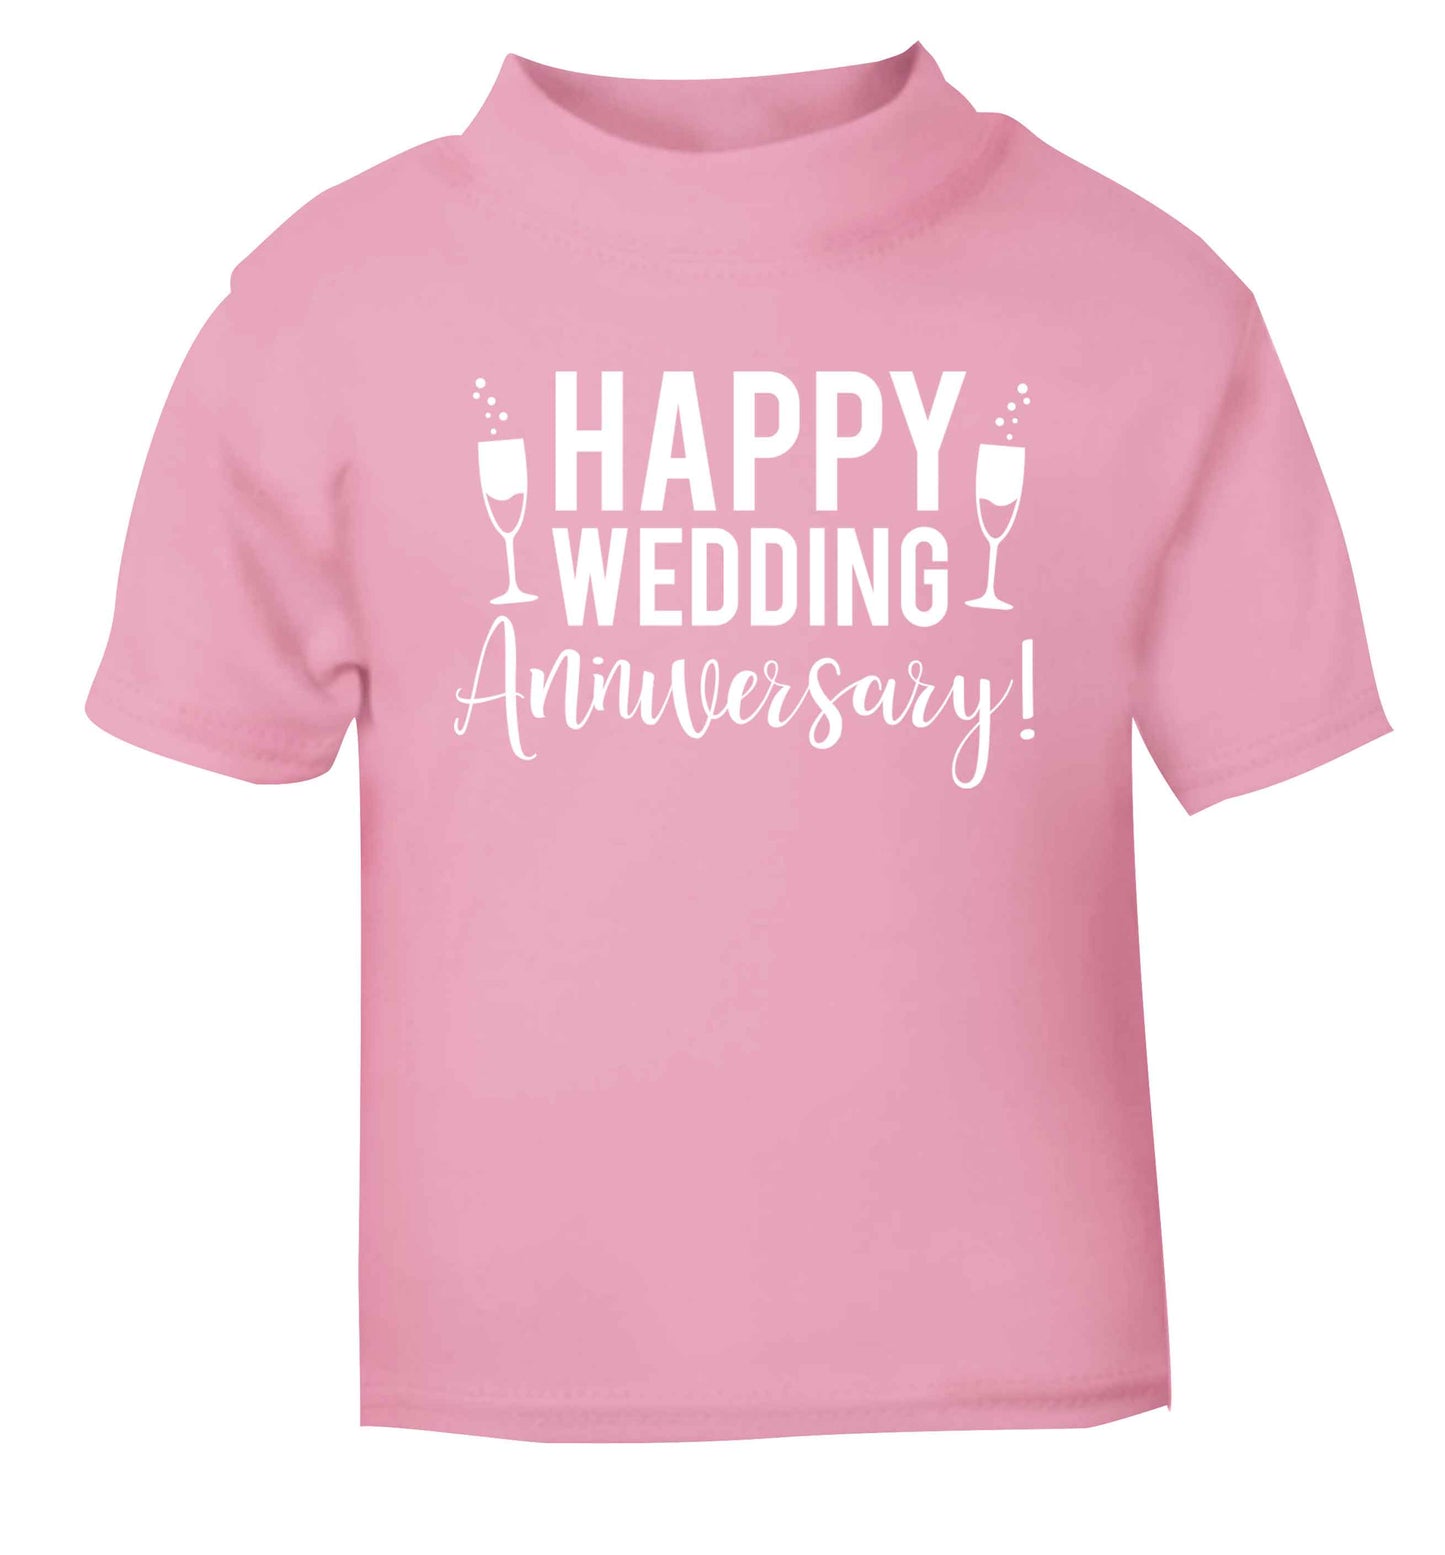 Happy wedding anniversary! light pink baby toddler Tshirt 2 Years